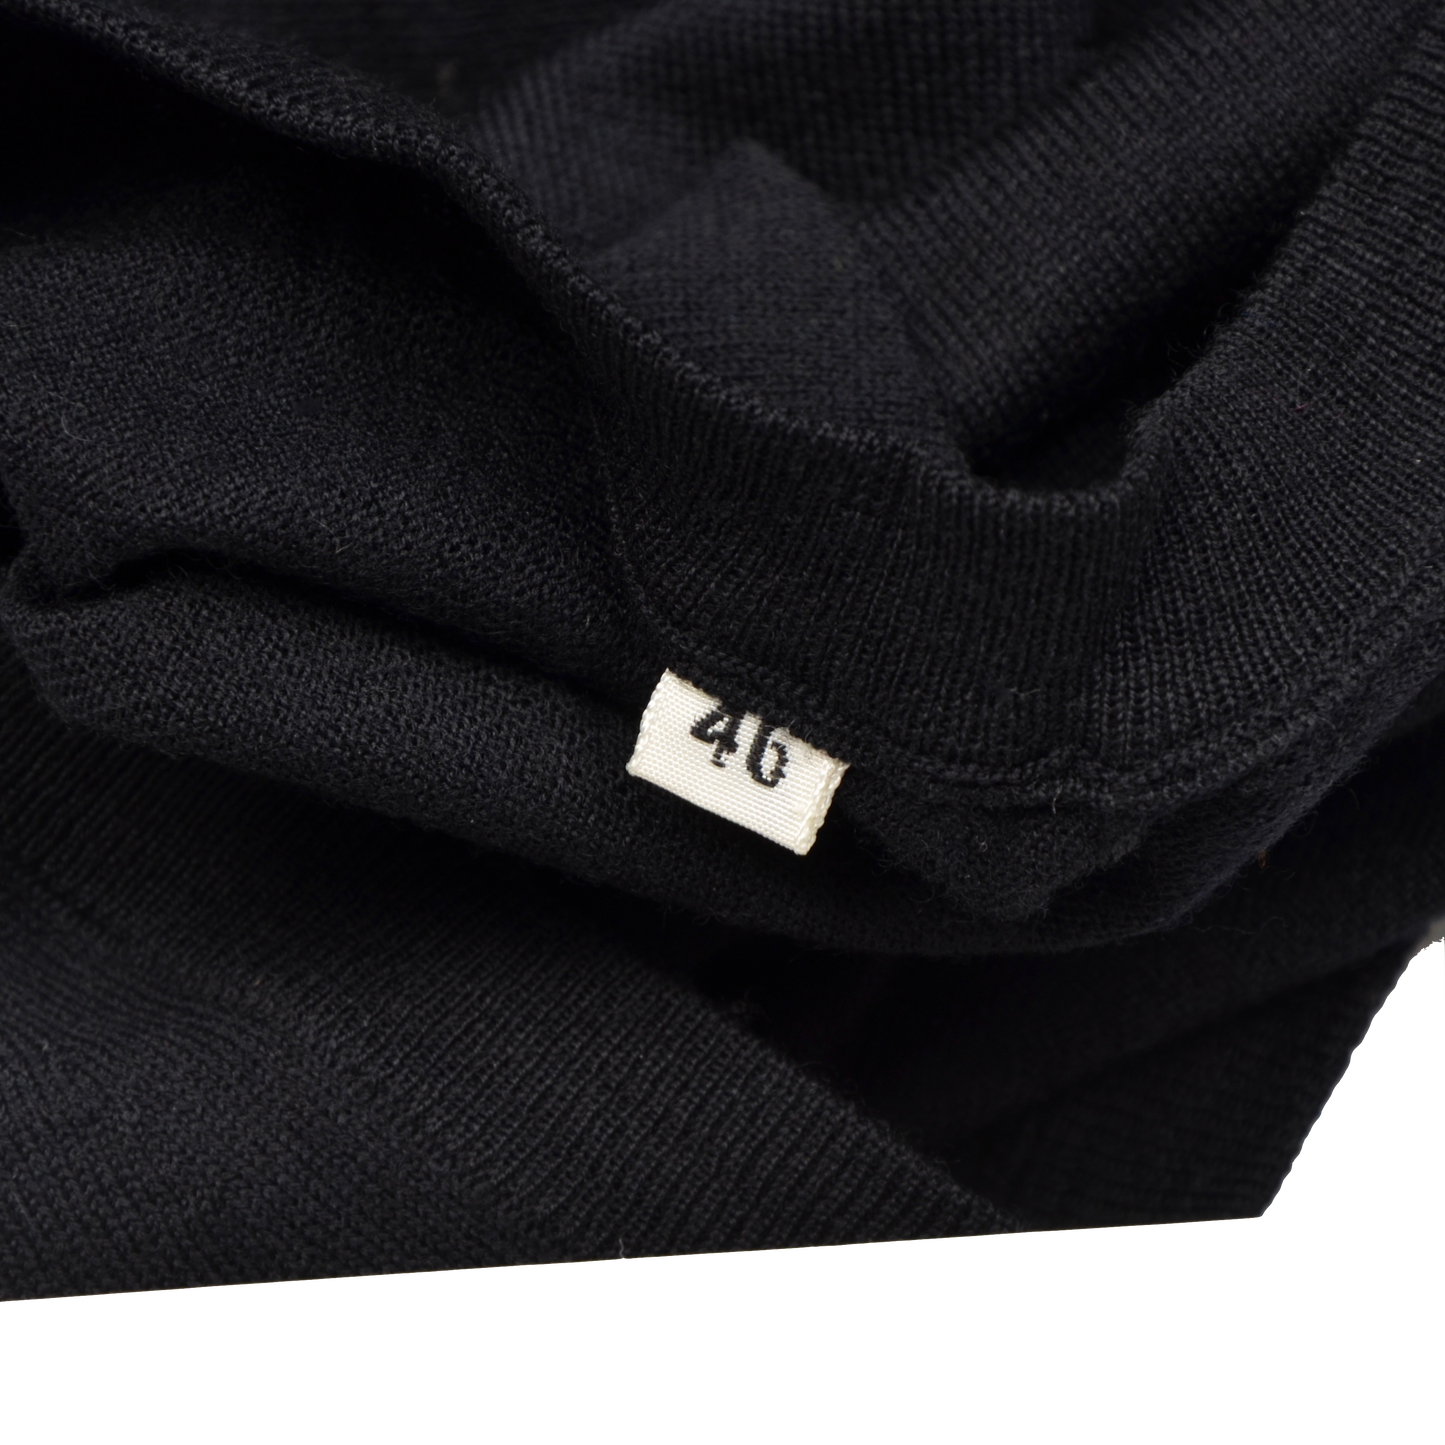 Knize Wien Sweater Vest Size 46/XL  - Black